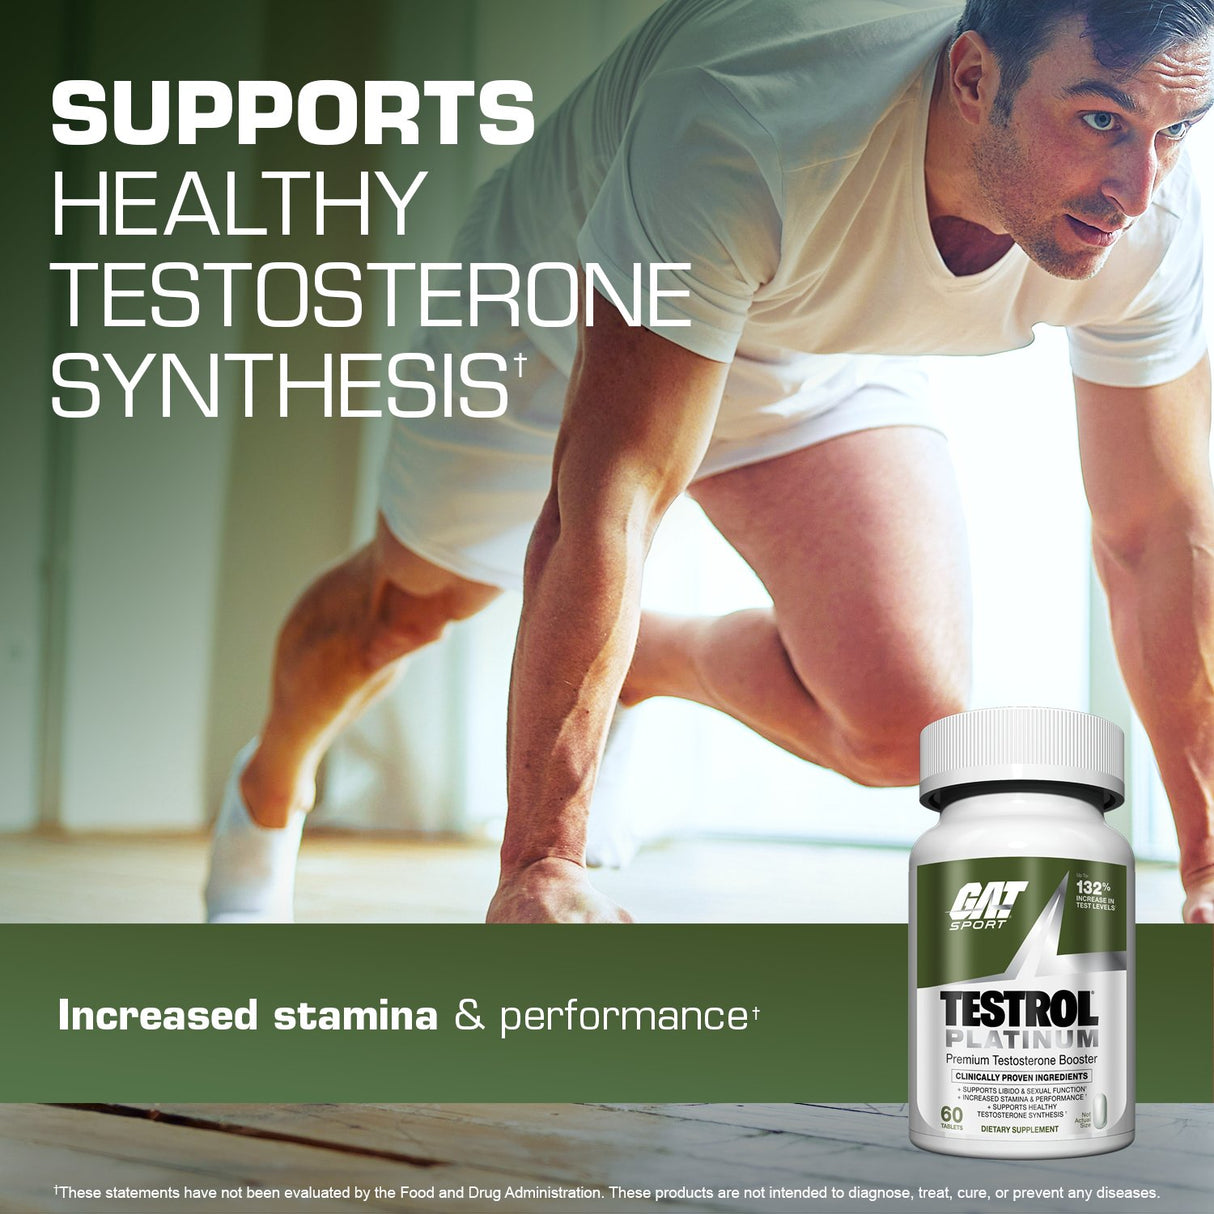 GAT SPORT TESTROL PLATINUM Premium Testosterone Booster